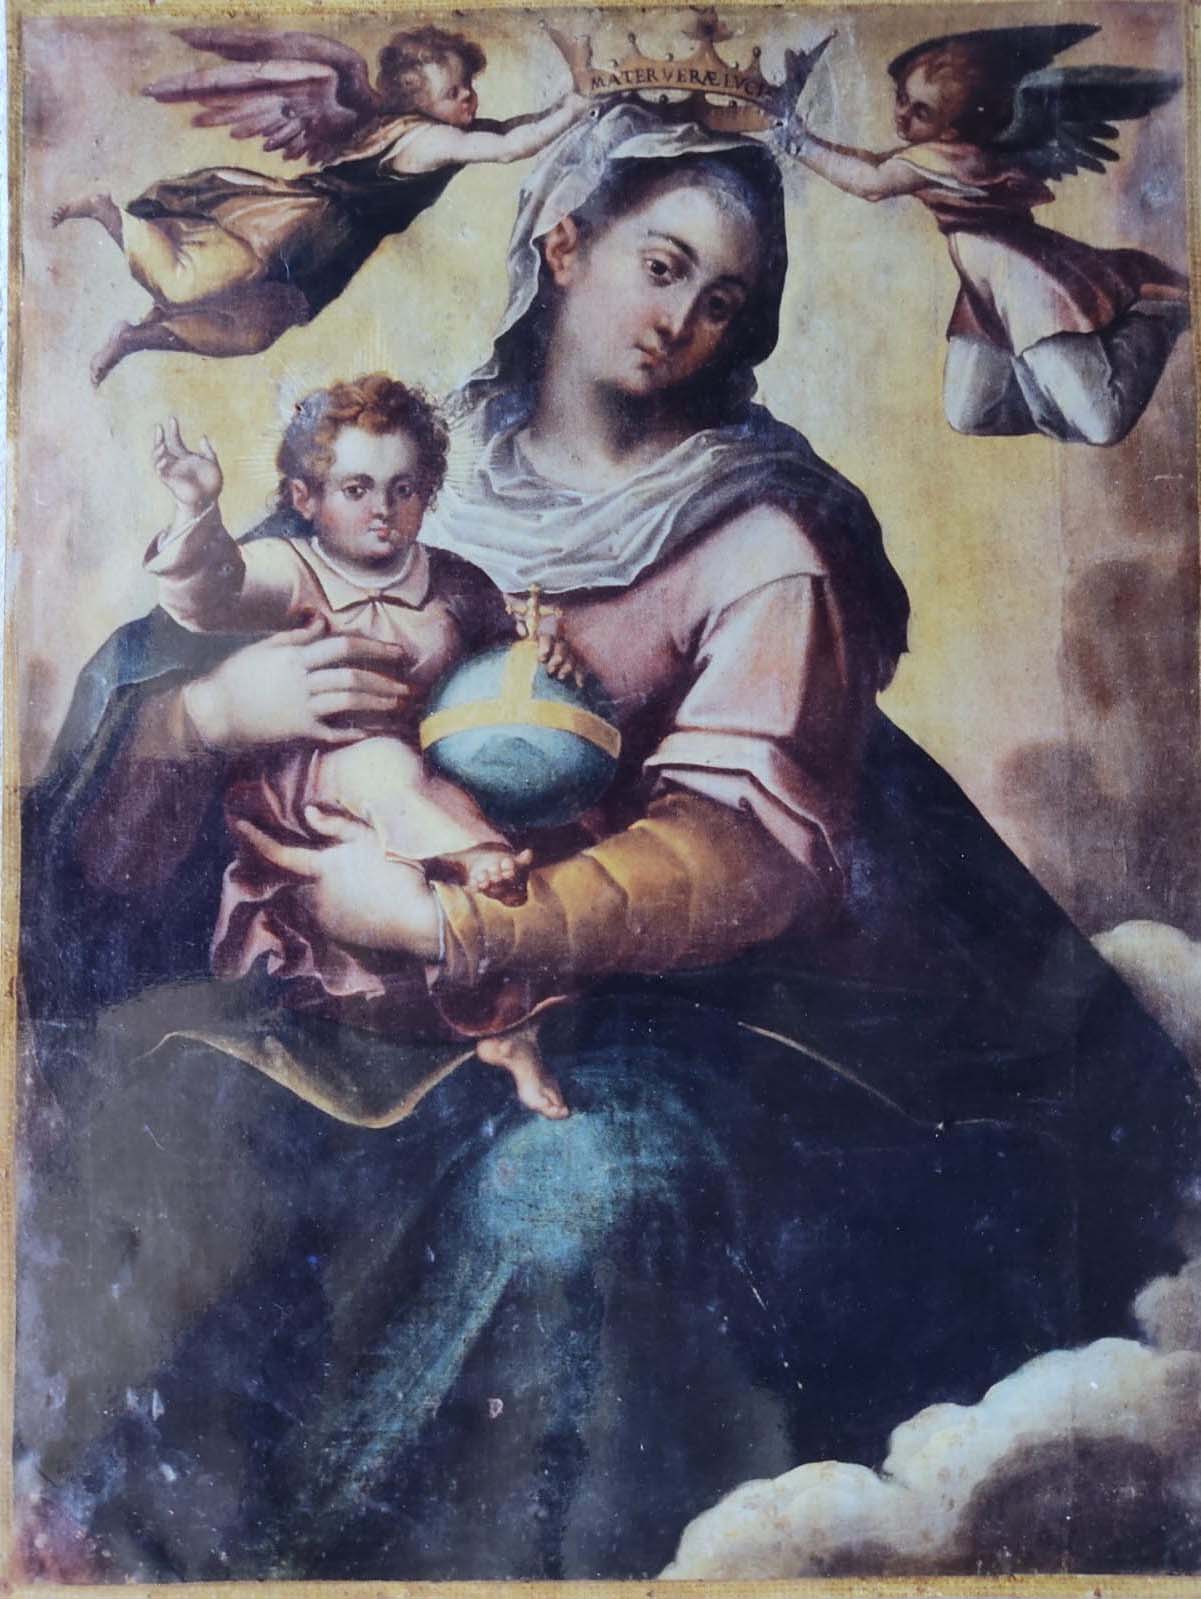 Tela originale della Madonna della Luce rubata nel 1971